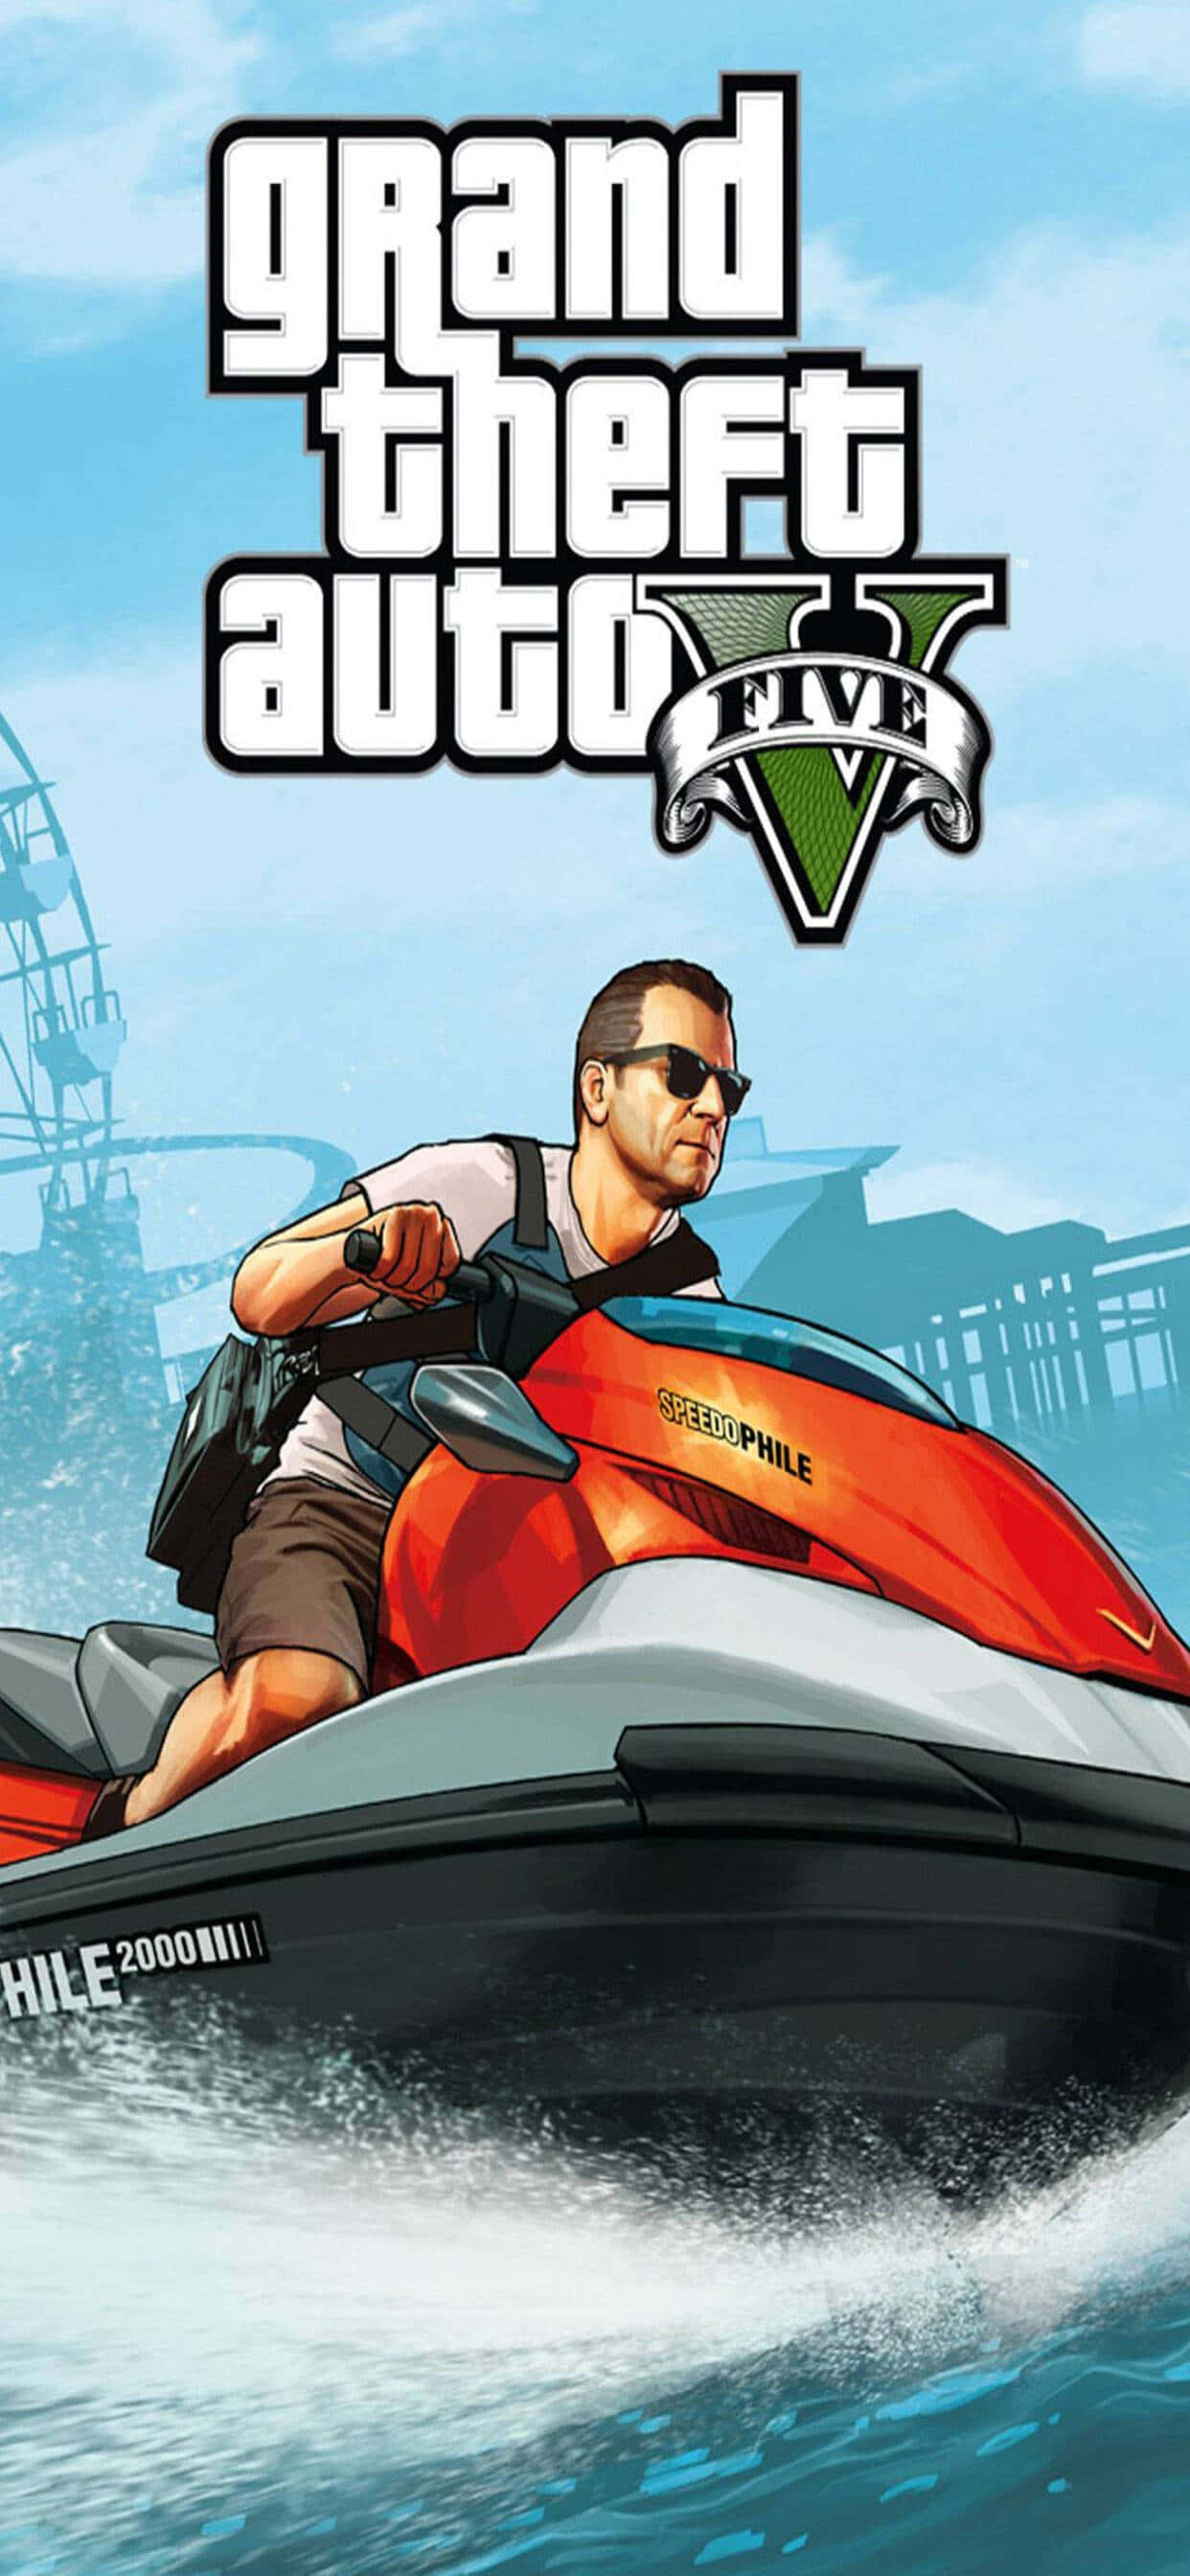 Sfondogrand Theft Auto V Michael In Moto D'acqua Su Iphone Xs Max